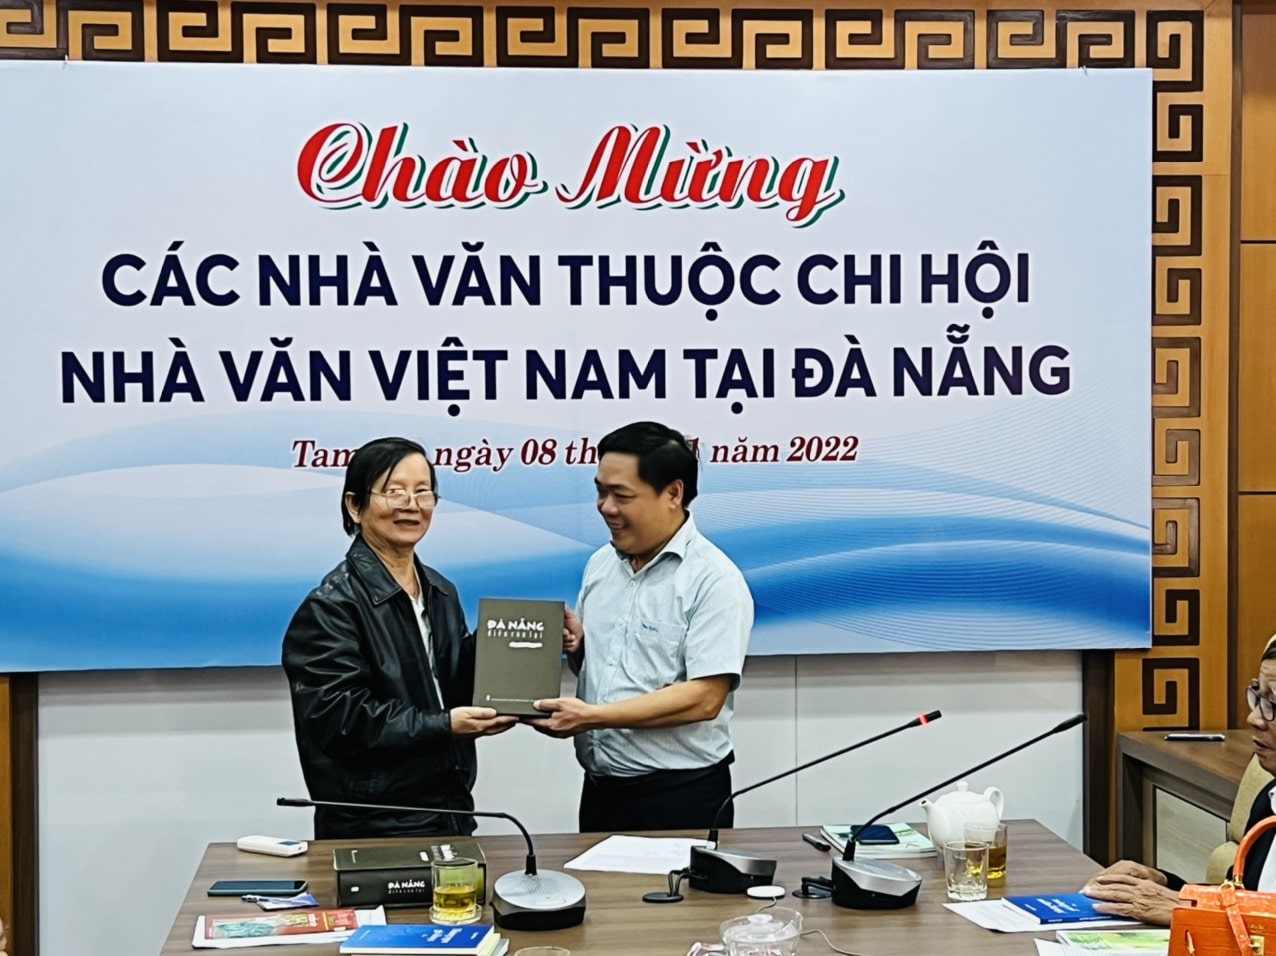 Nhà thơ, Dịch giả Bùi Xuân (bìa trái) tặng tác phẩm "Điều còn lại" (Tuyển tập thơ văn của Nhà văn Việt Nam tại Đà Nắng) cho Chủ tịch UBND Thành phố Tam Kỳ Bùi Đức Ảnh 